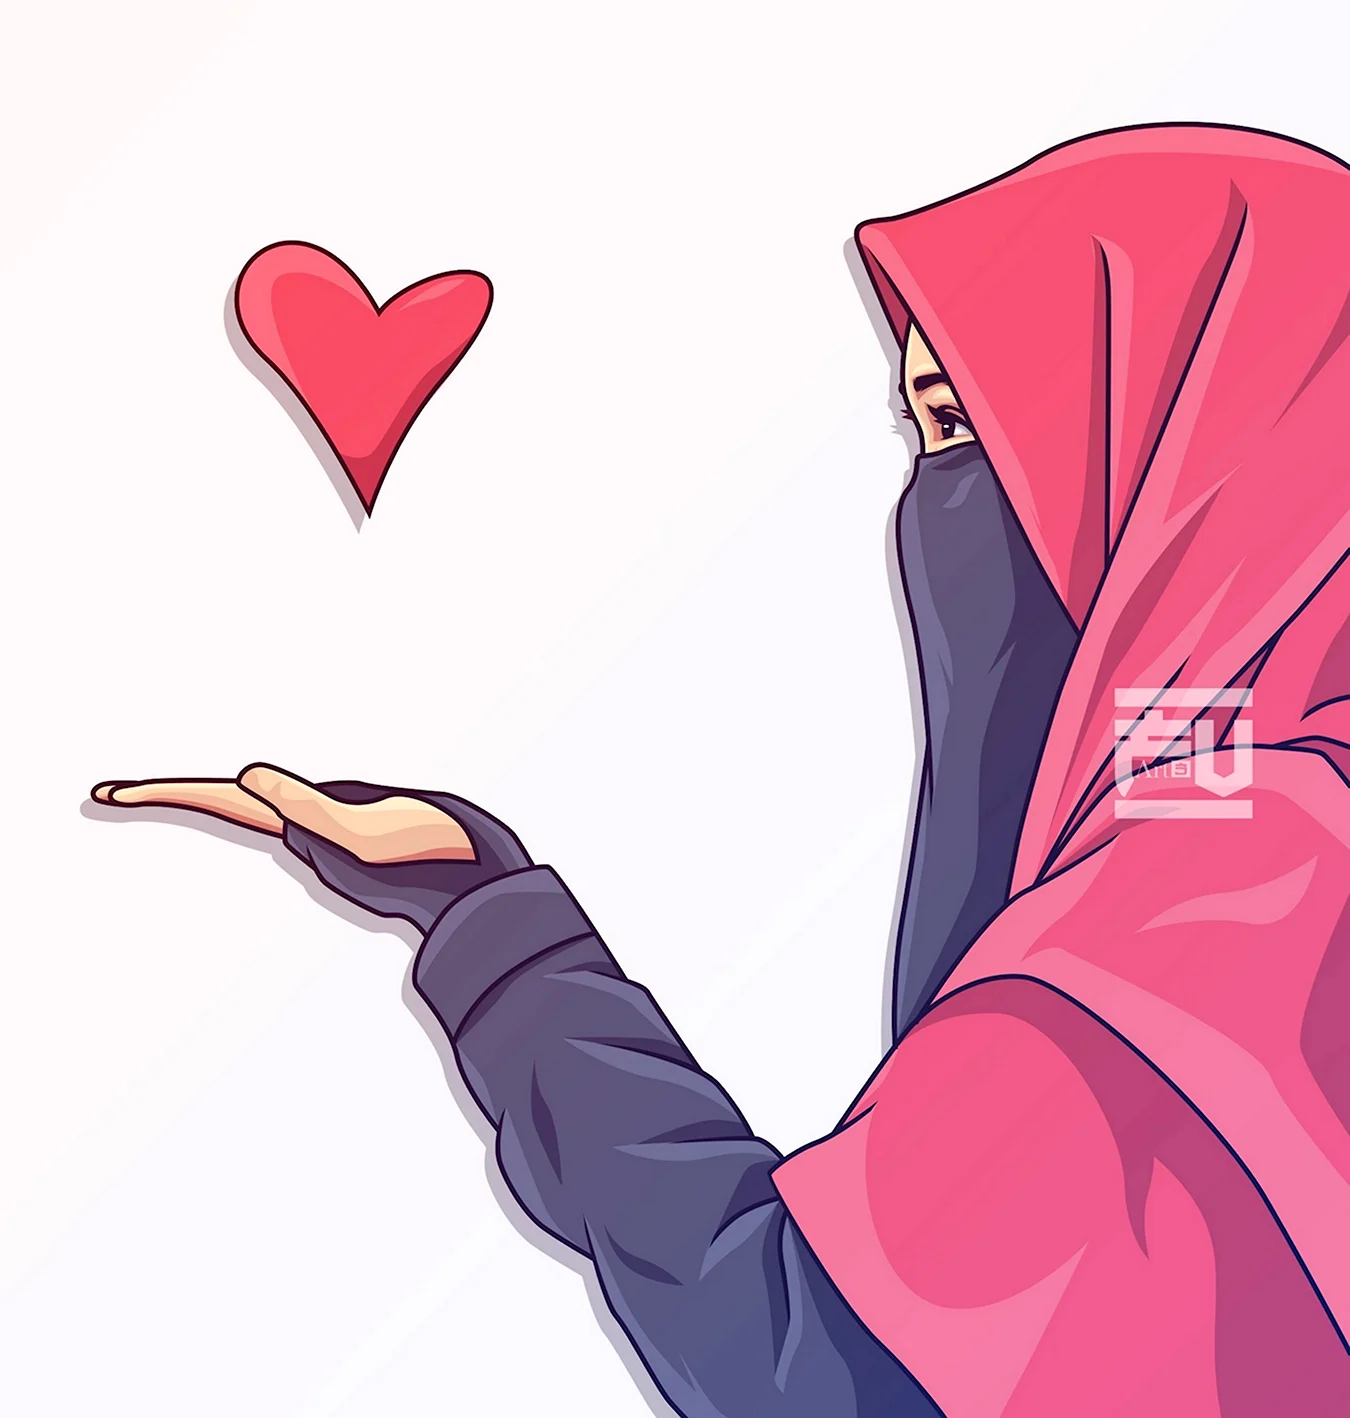 Нарисовать девушку в хиджабе